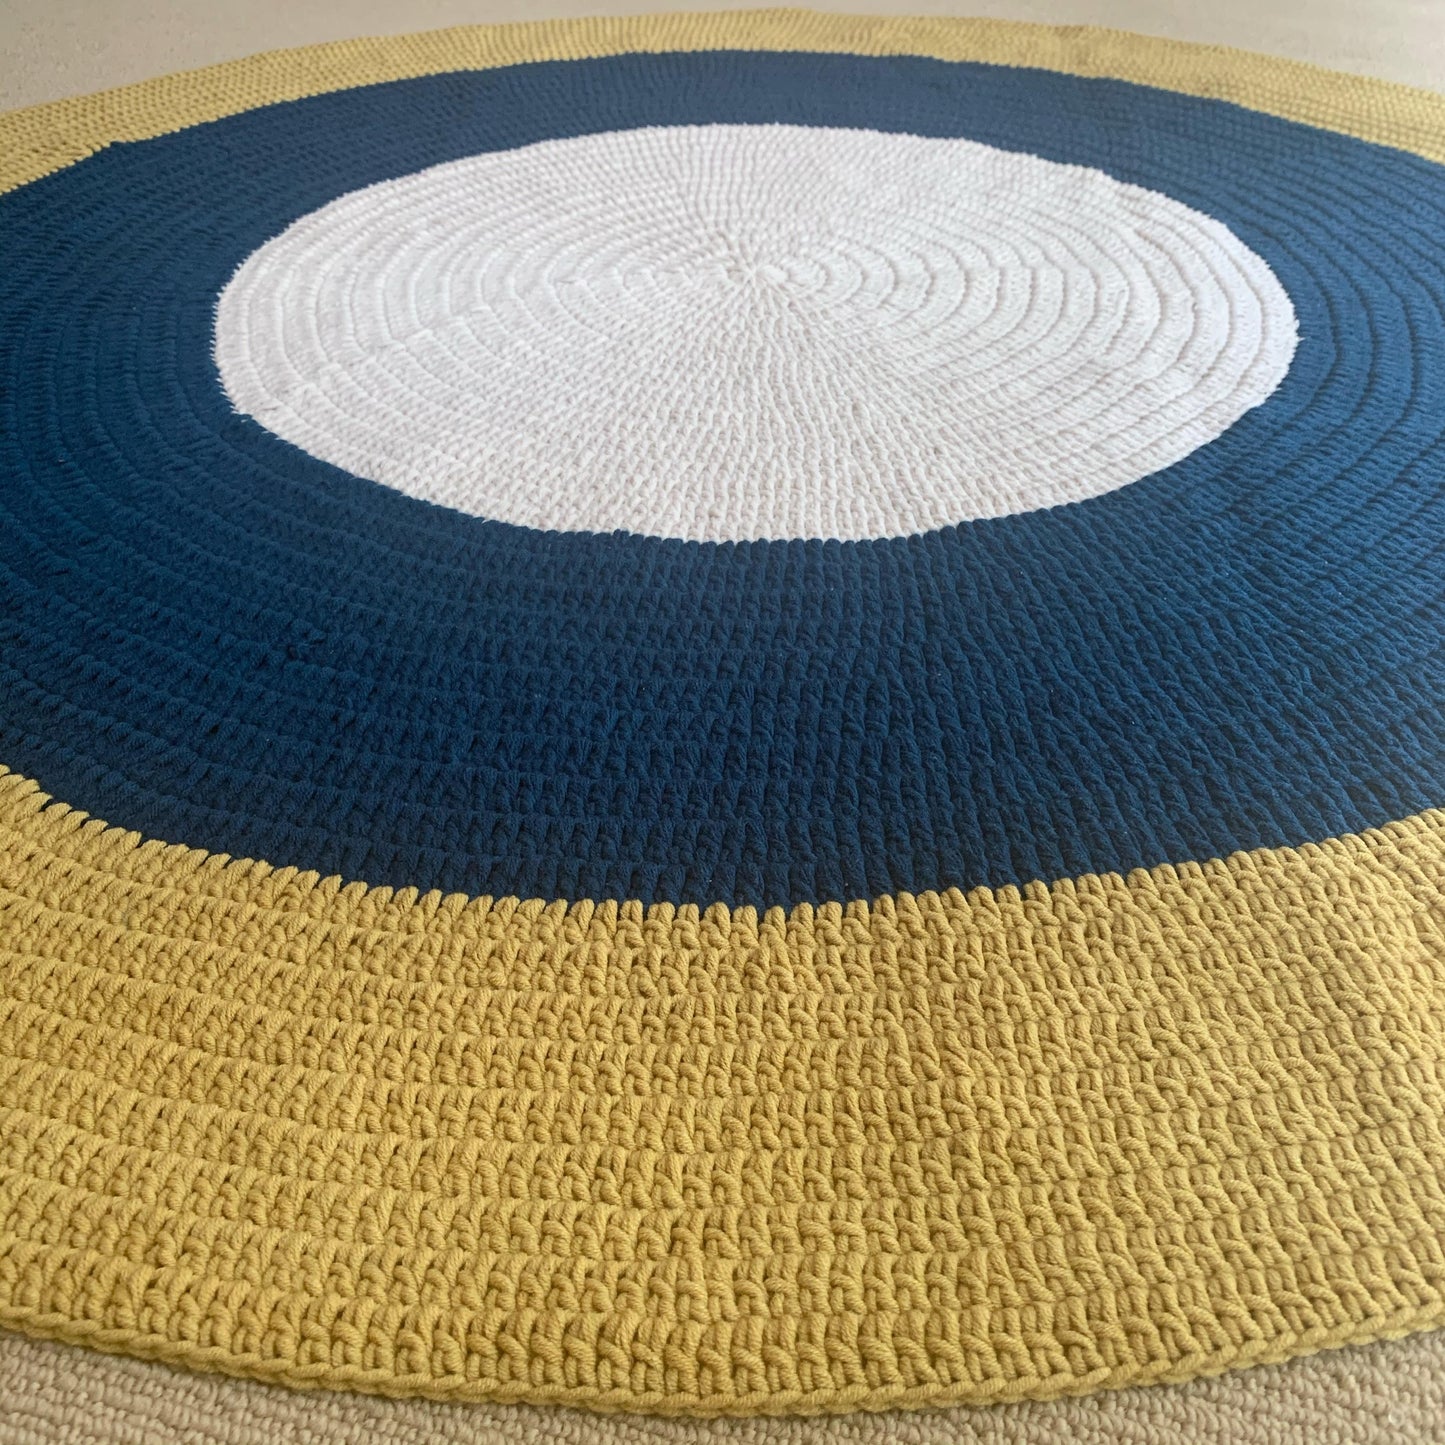 Crochet Rug - Navy Blue, Mustard + Cream